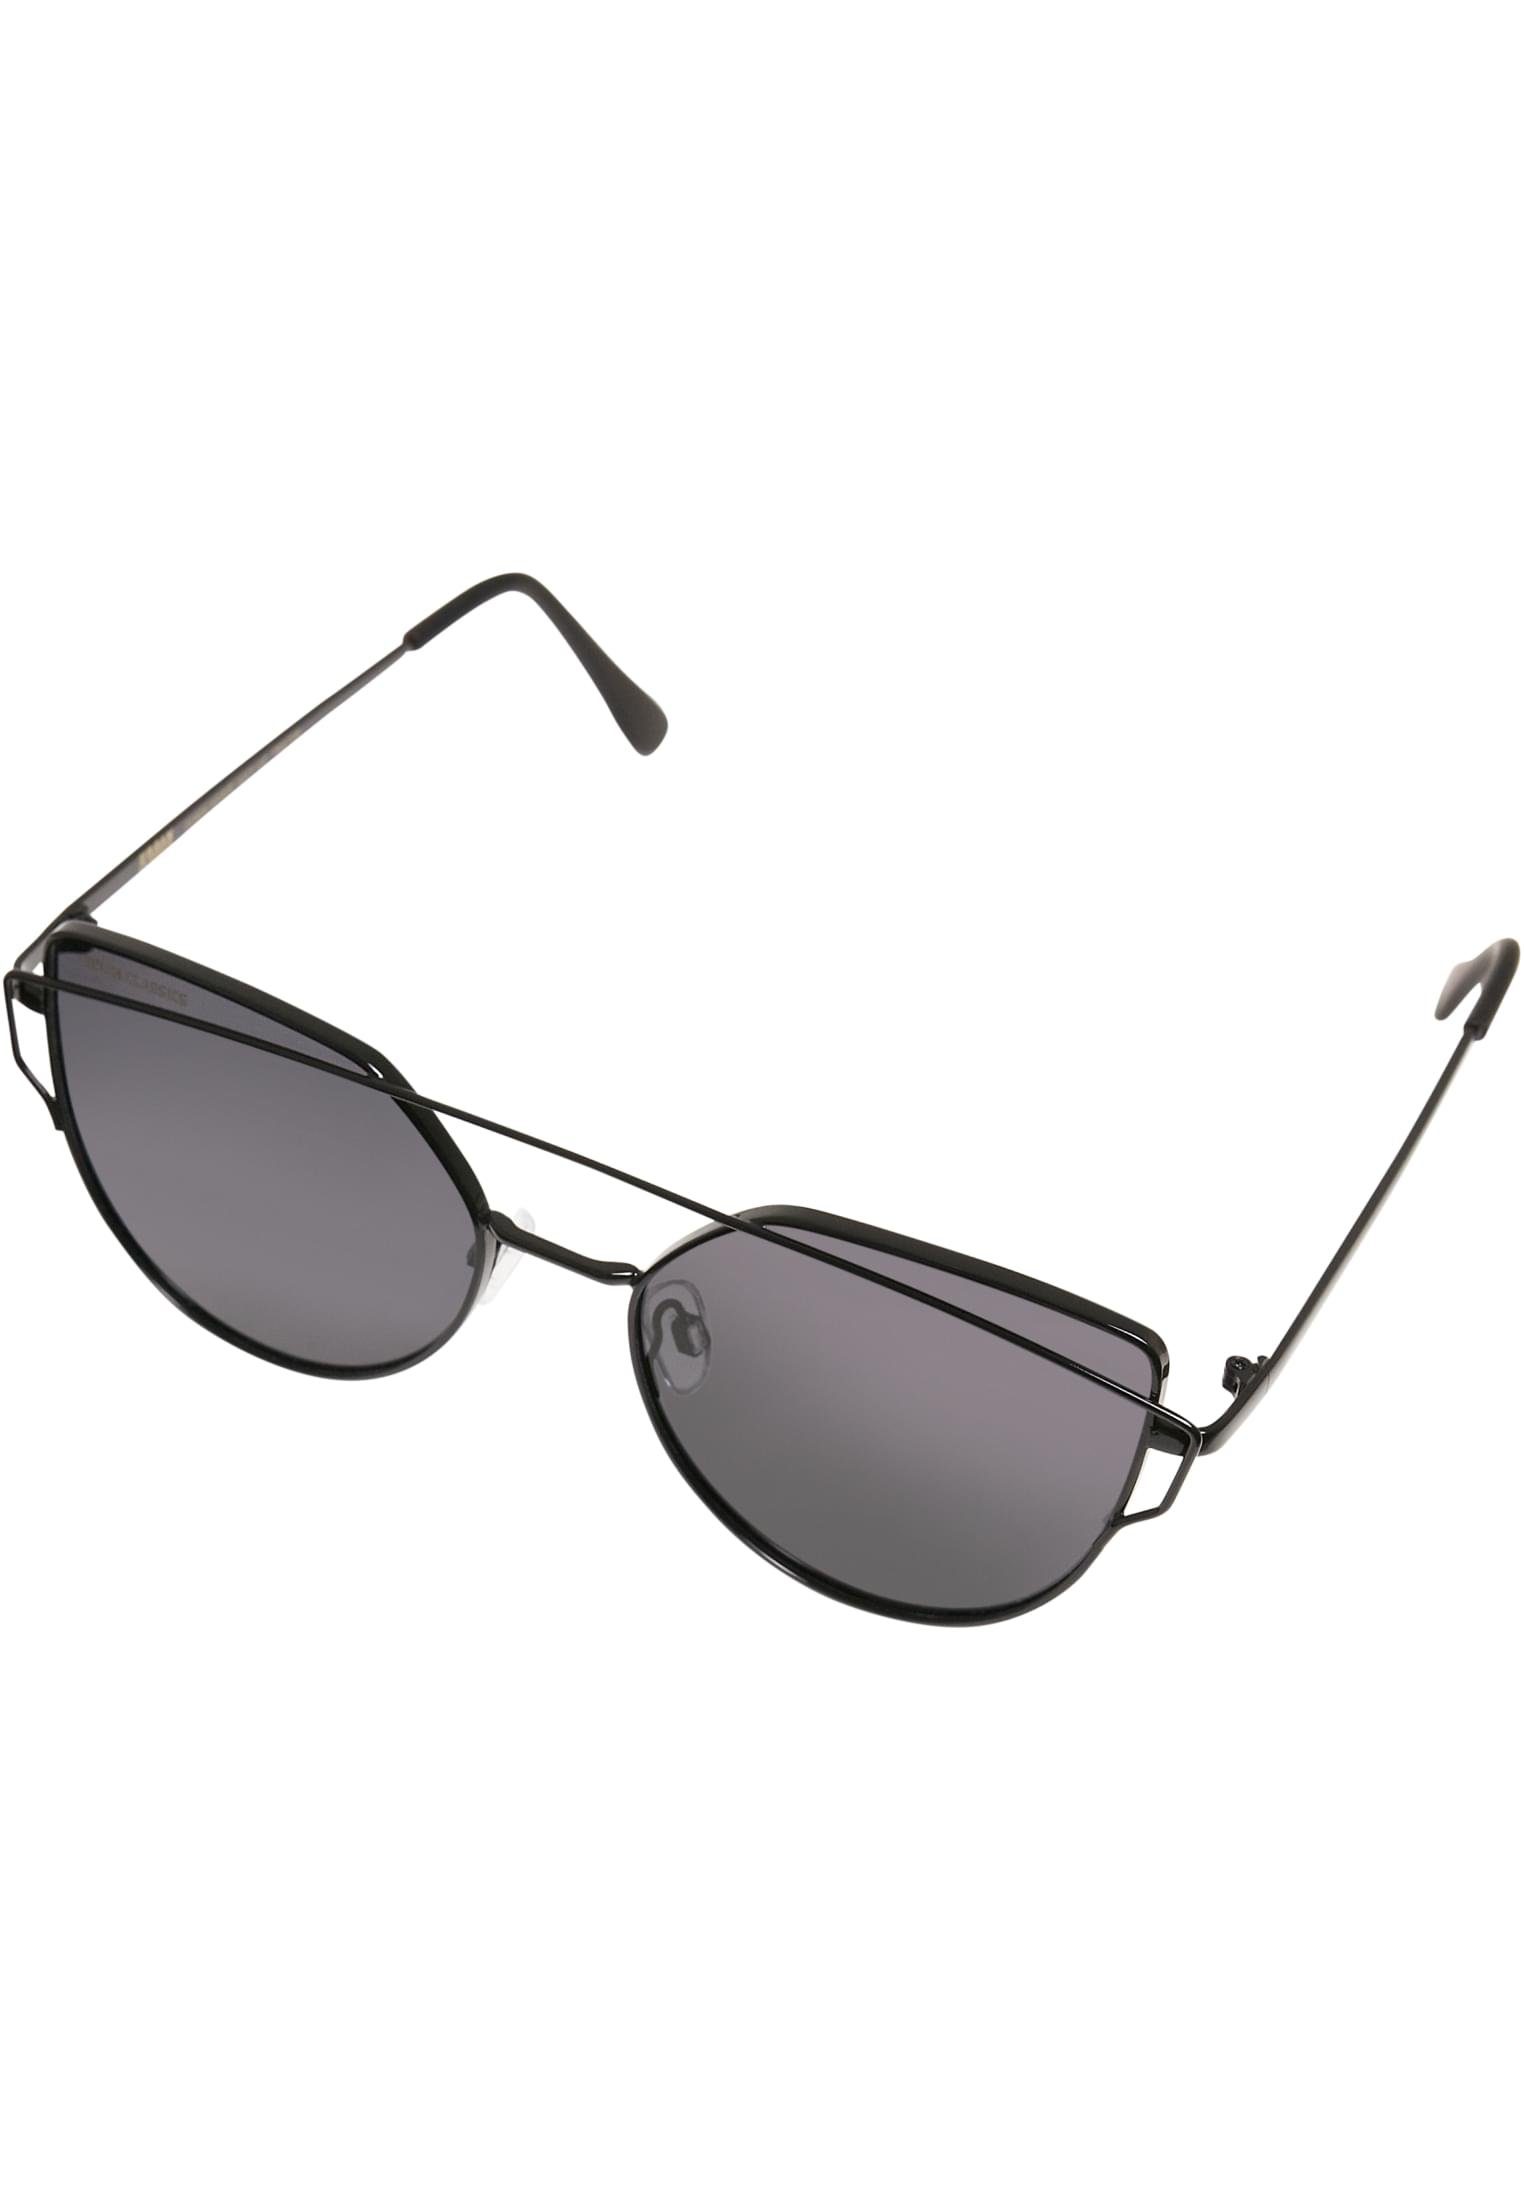 Accessoires CLASSICS black UC Sunglasses URBAN Sonnenbrille July